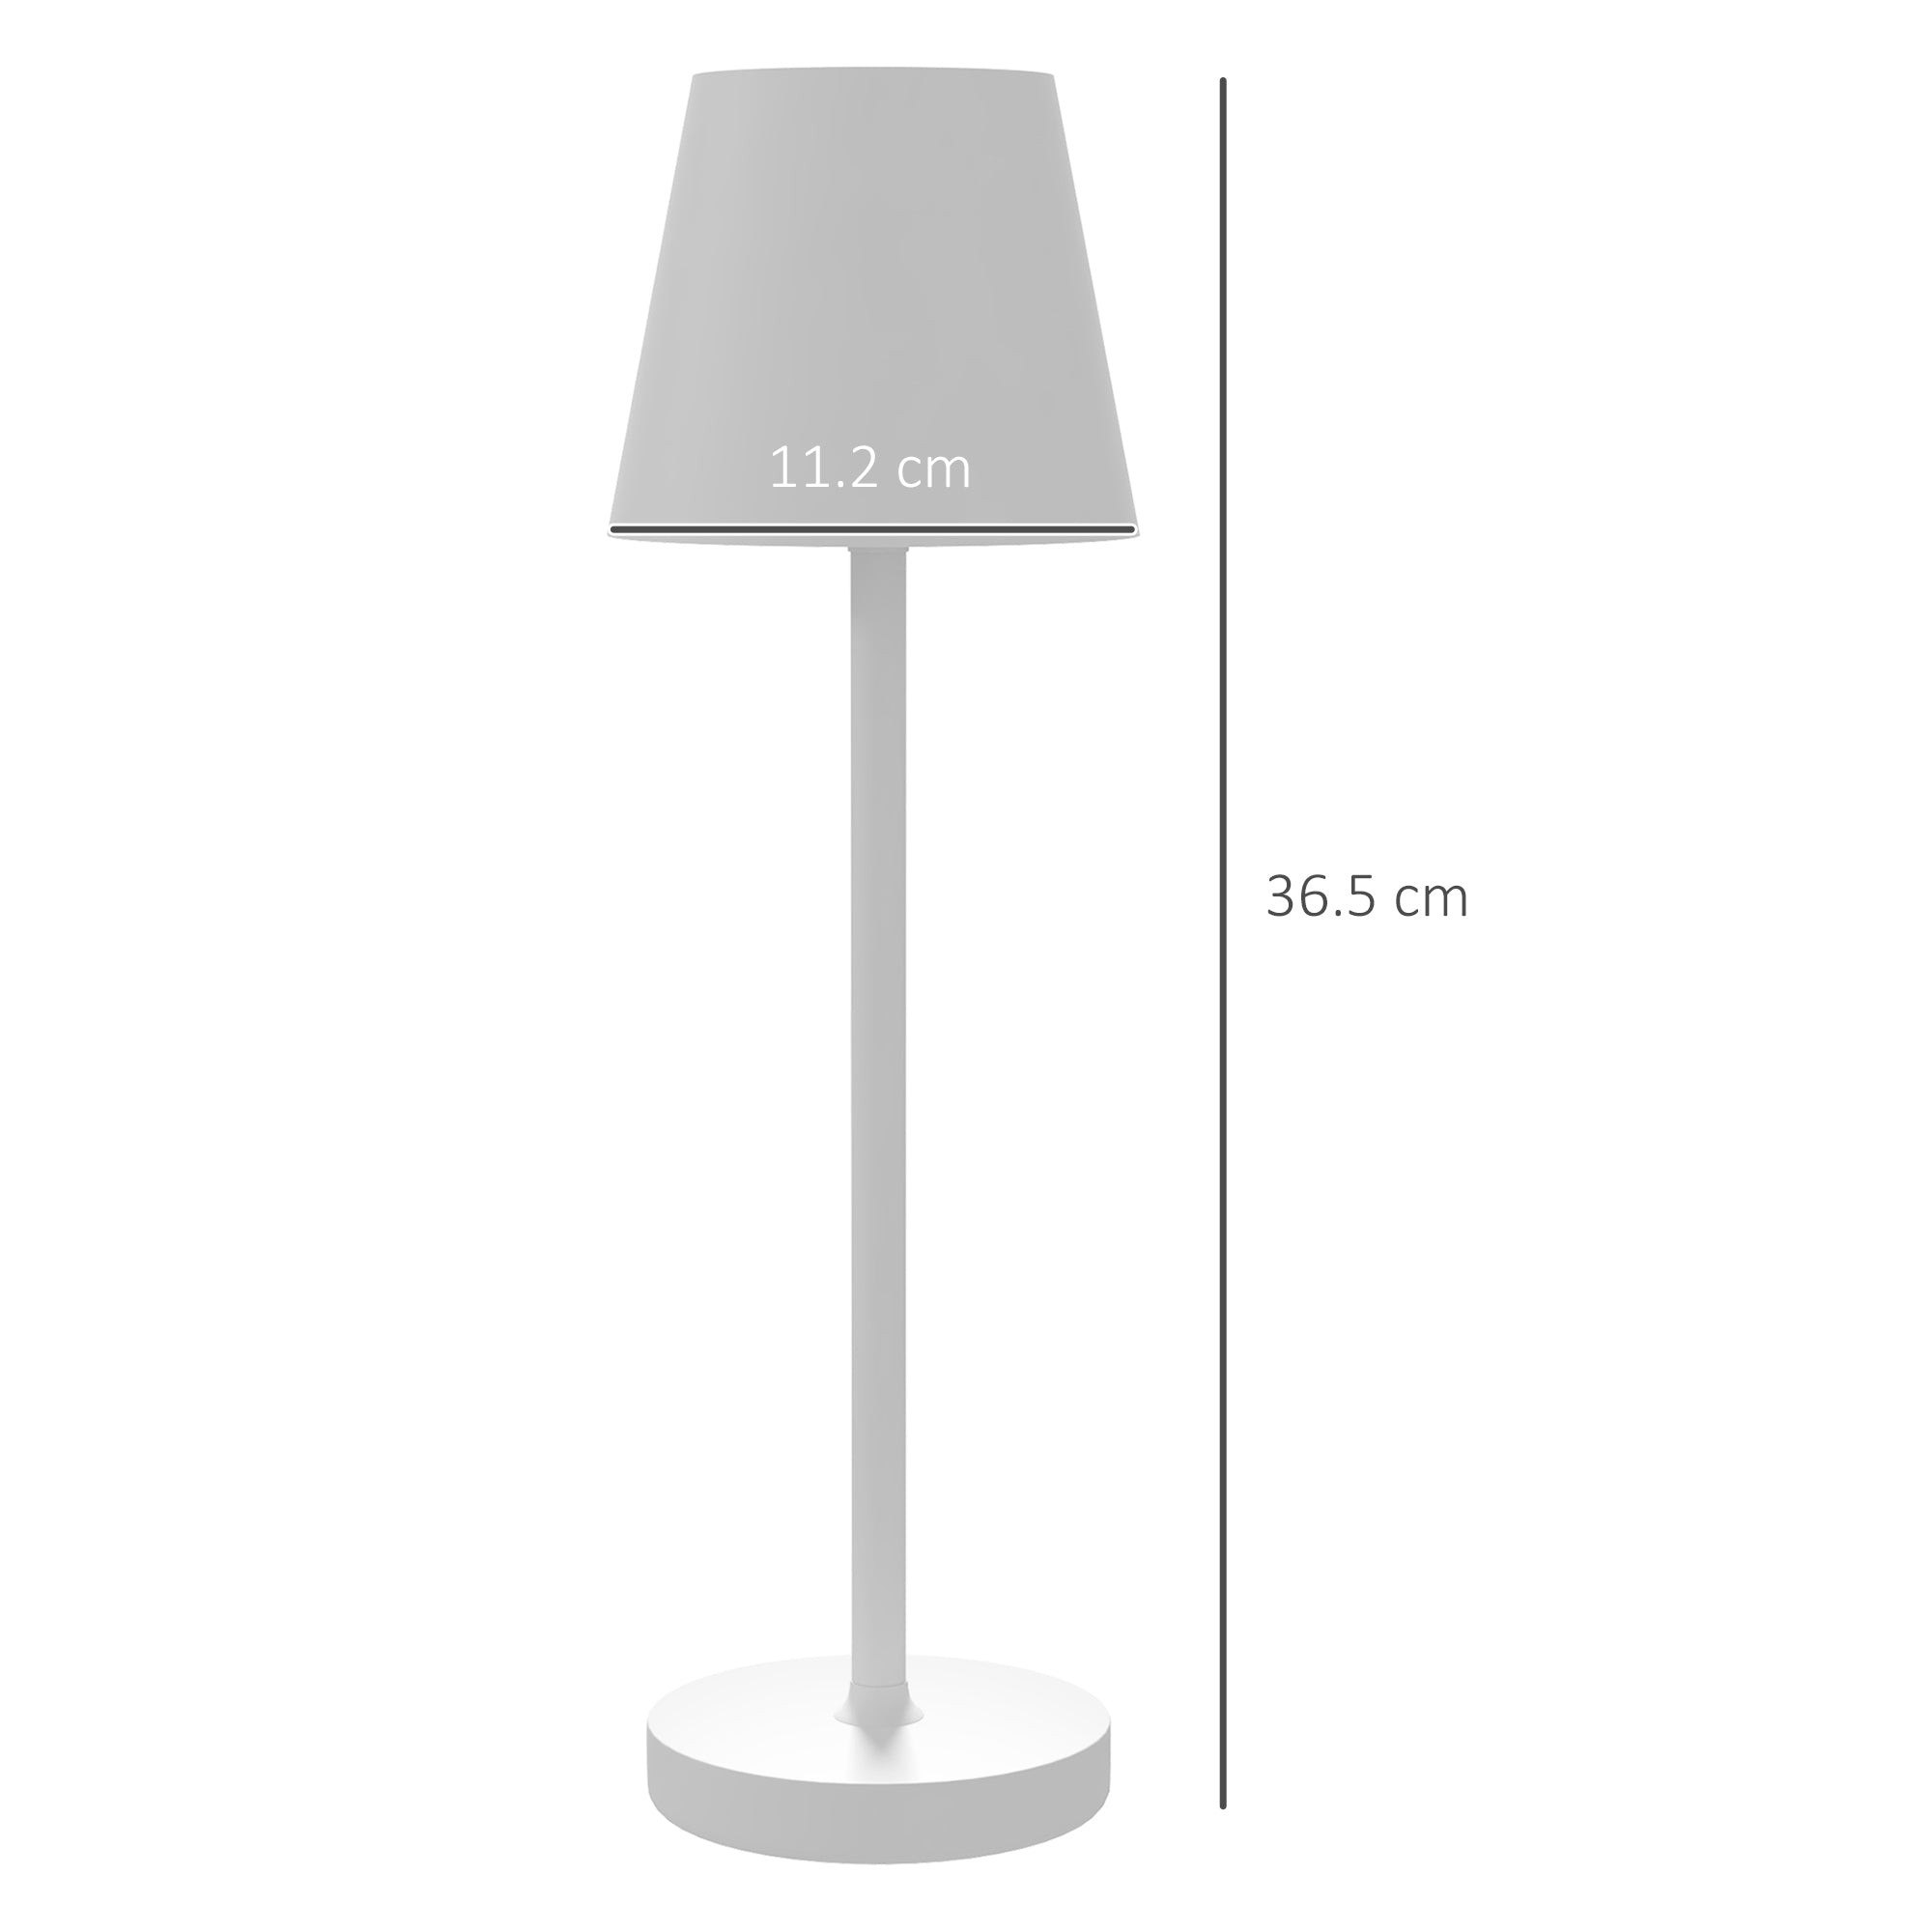 EASYCOMFORT Lampada da Tavolo Portatile in Acrilico e Metallo da 3600mAh  con Cavo di Ricarica, Ø11.2x36.5 cm, Bianco